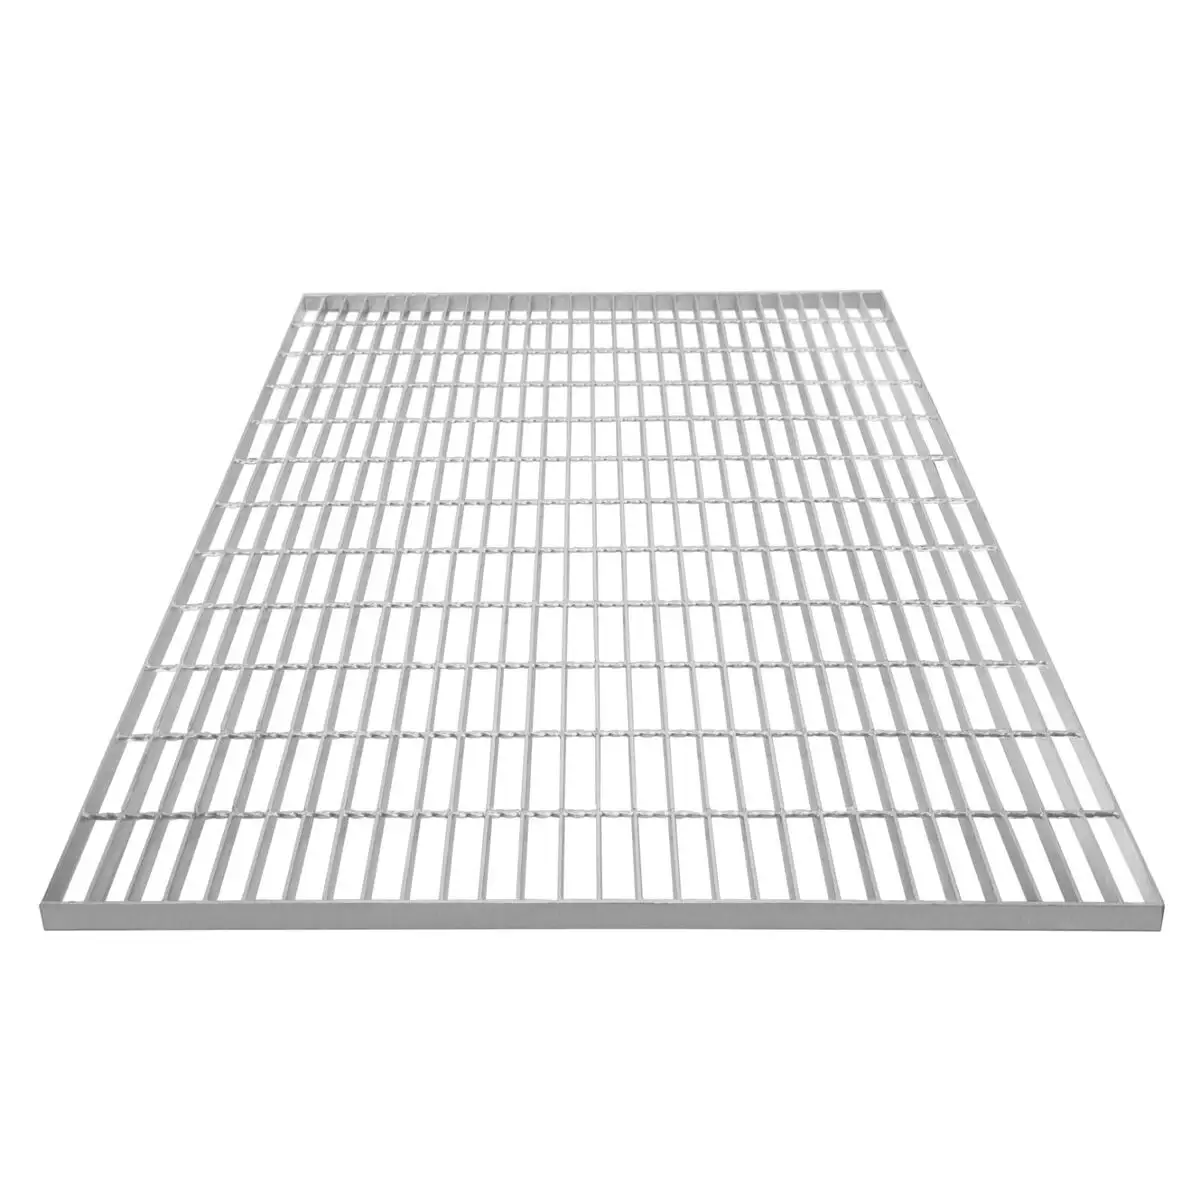 Q235 dimensioni personalizzate tipo di barra pavimento a griglia in metallo resistente filippine utilizzato grata in acciaio per passerella